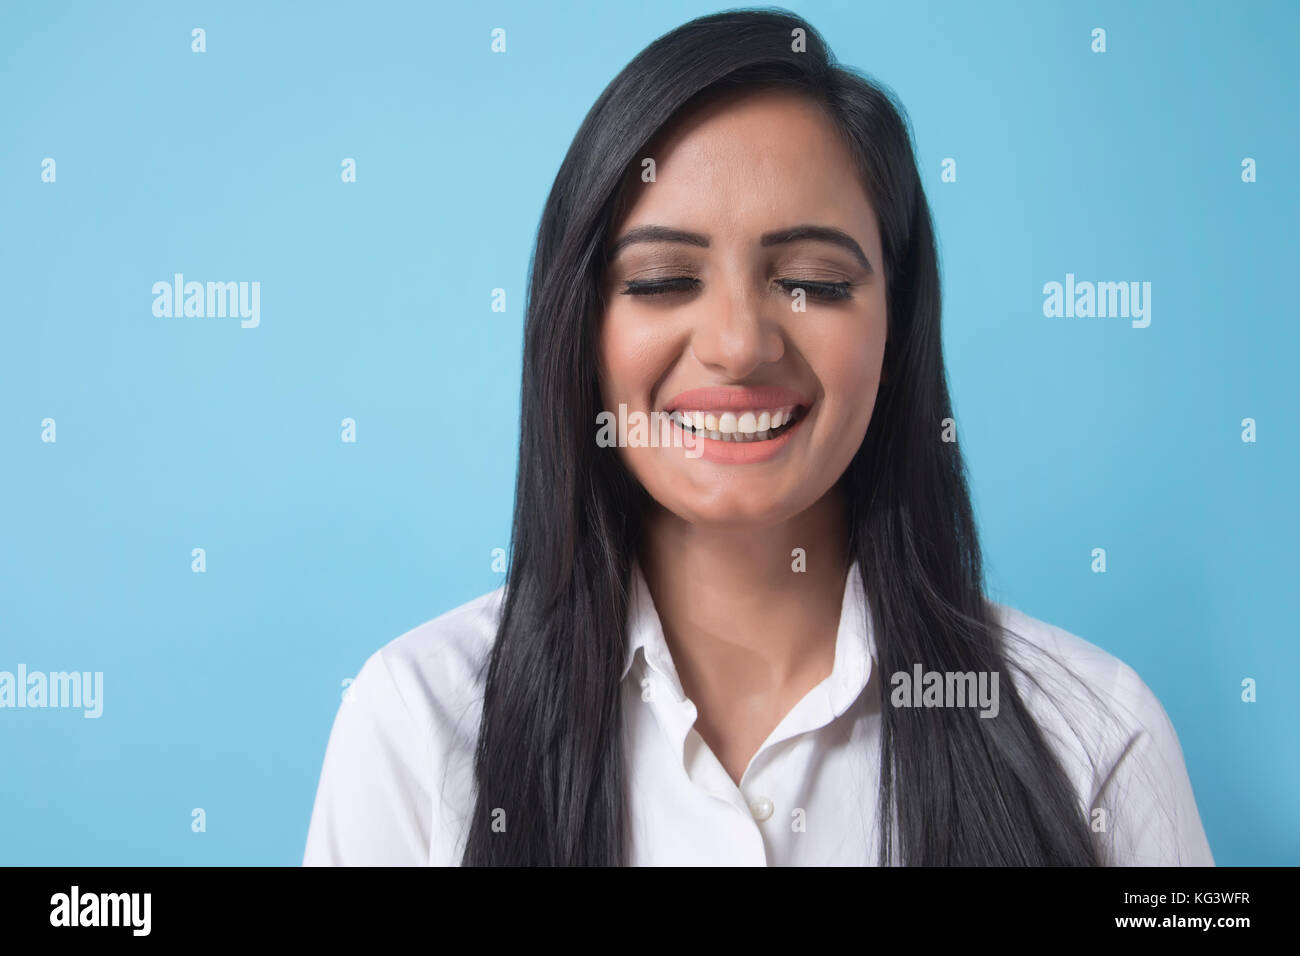 Portrait of smiling young businesswoman sur fond bleu Banque D'Images